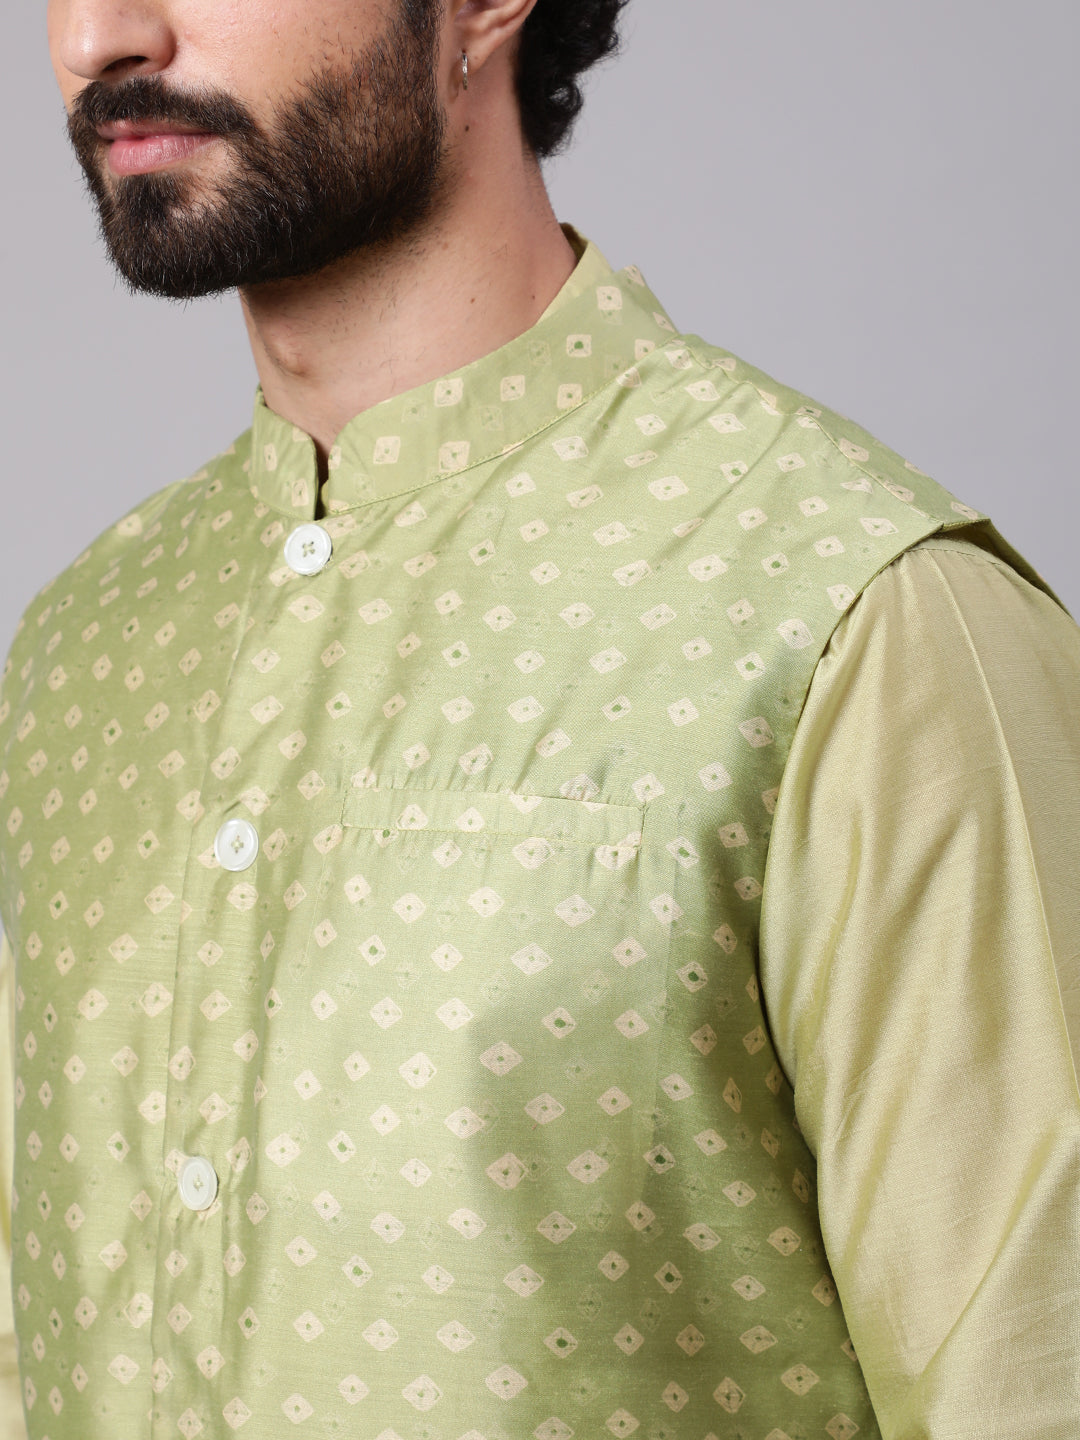 Men's Green Kurta Pyjama With Bandhani Print Nehru Jacket - Aks Men